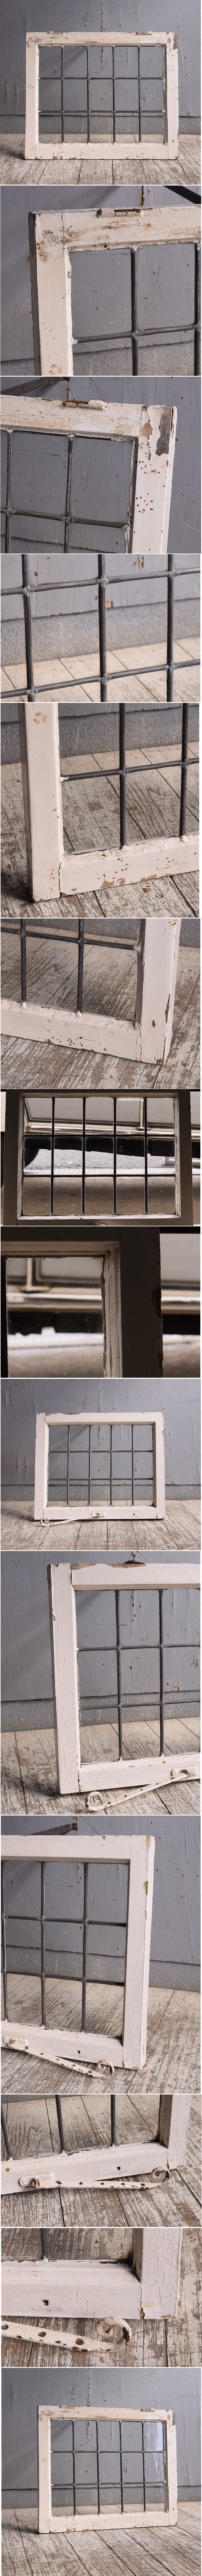 イギリス アンティーク 窓 無色透明 10748